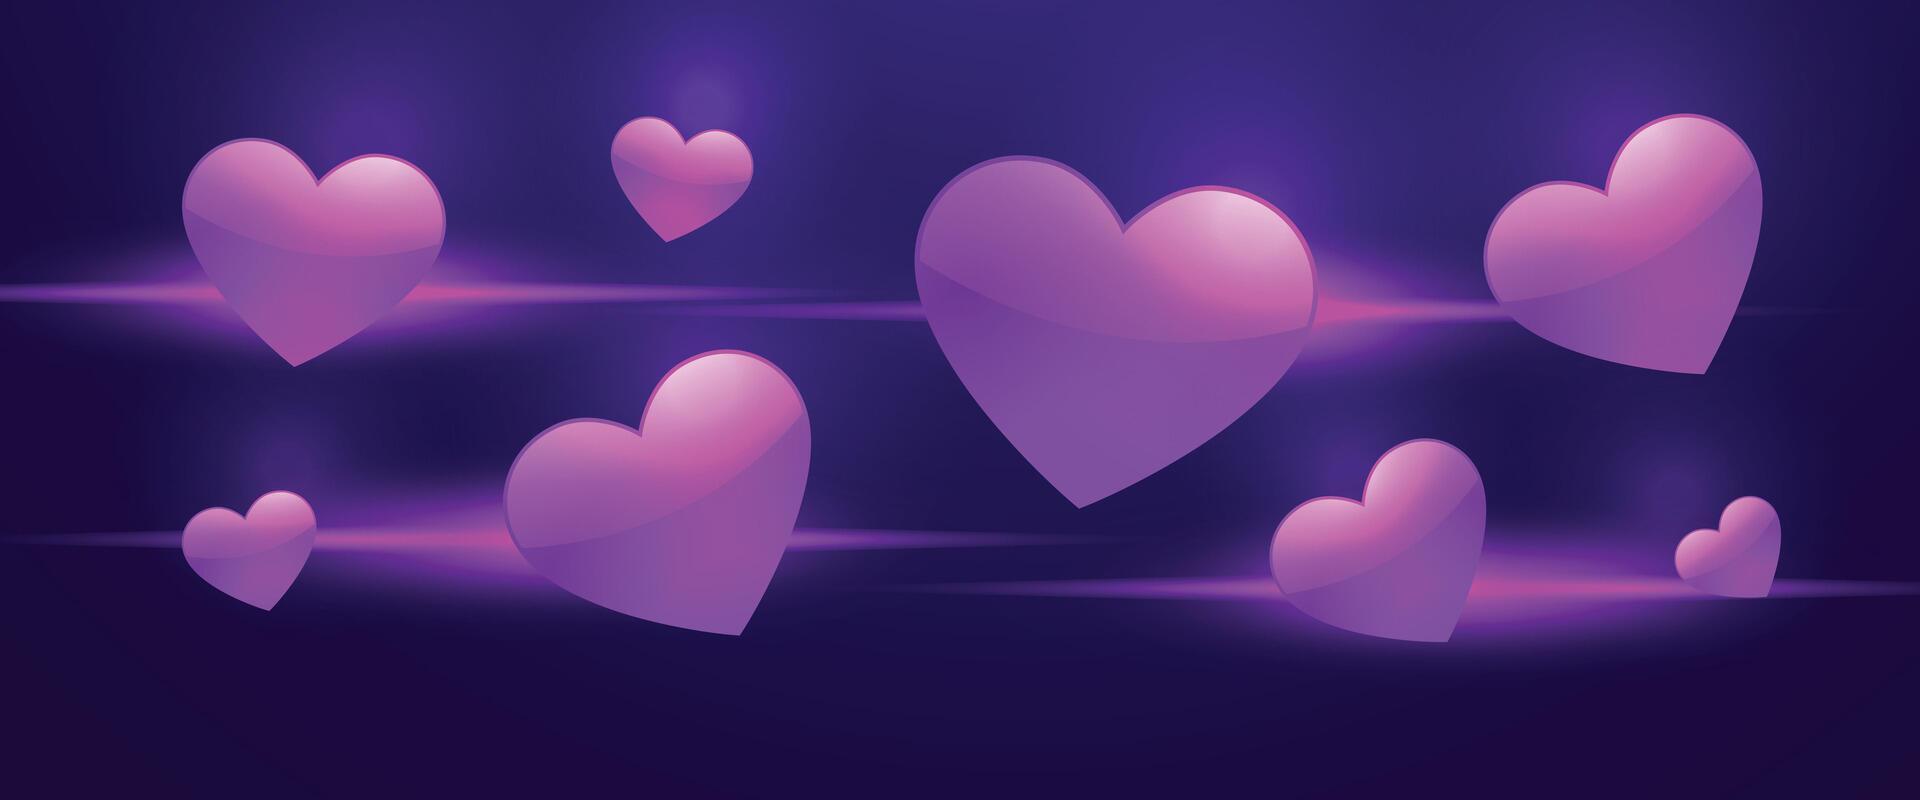 valentijnsdag dag lief hart themed banier voor romantisch berichten vector